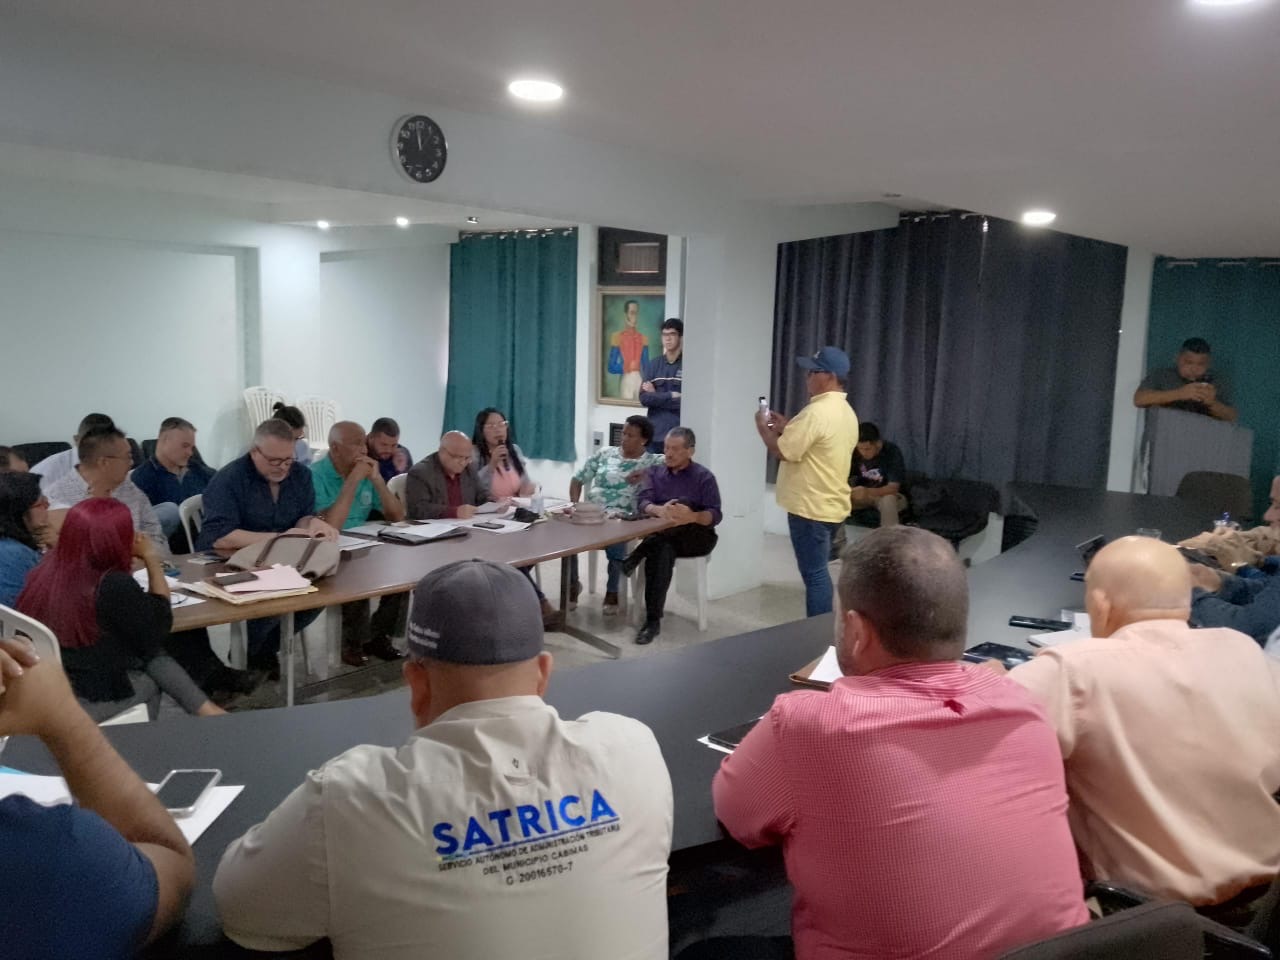 Imagen de la noticia: Muñiz Cabimas: Realizan mesa de trabajo entre el Concejo Municipal, SATRICA y el sector comercial